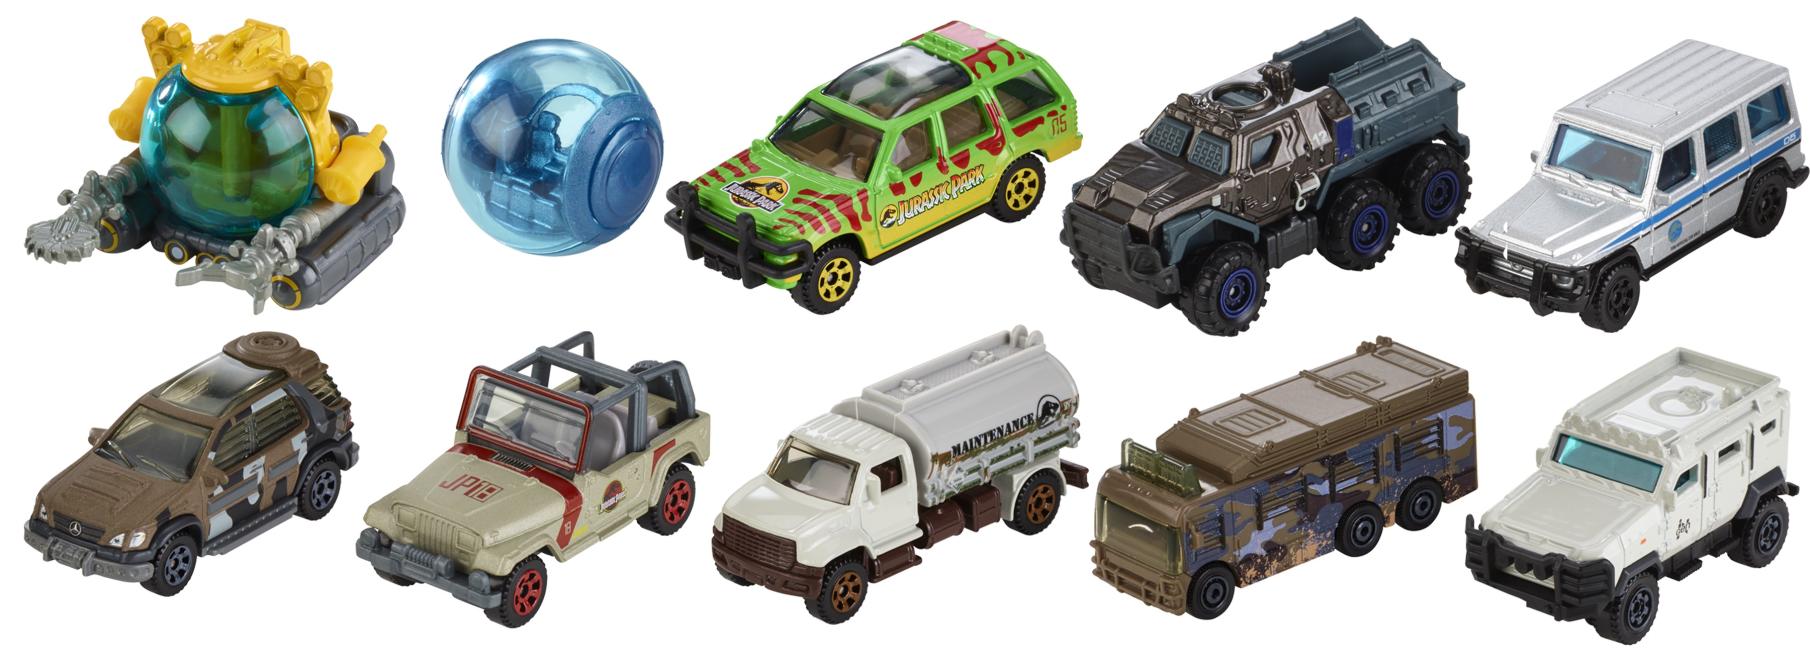 político Miniatura gritar Hot Wheels Jurassic World Dominion Cars Assorted – El Mercado de Juguetes